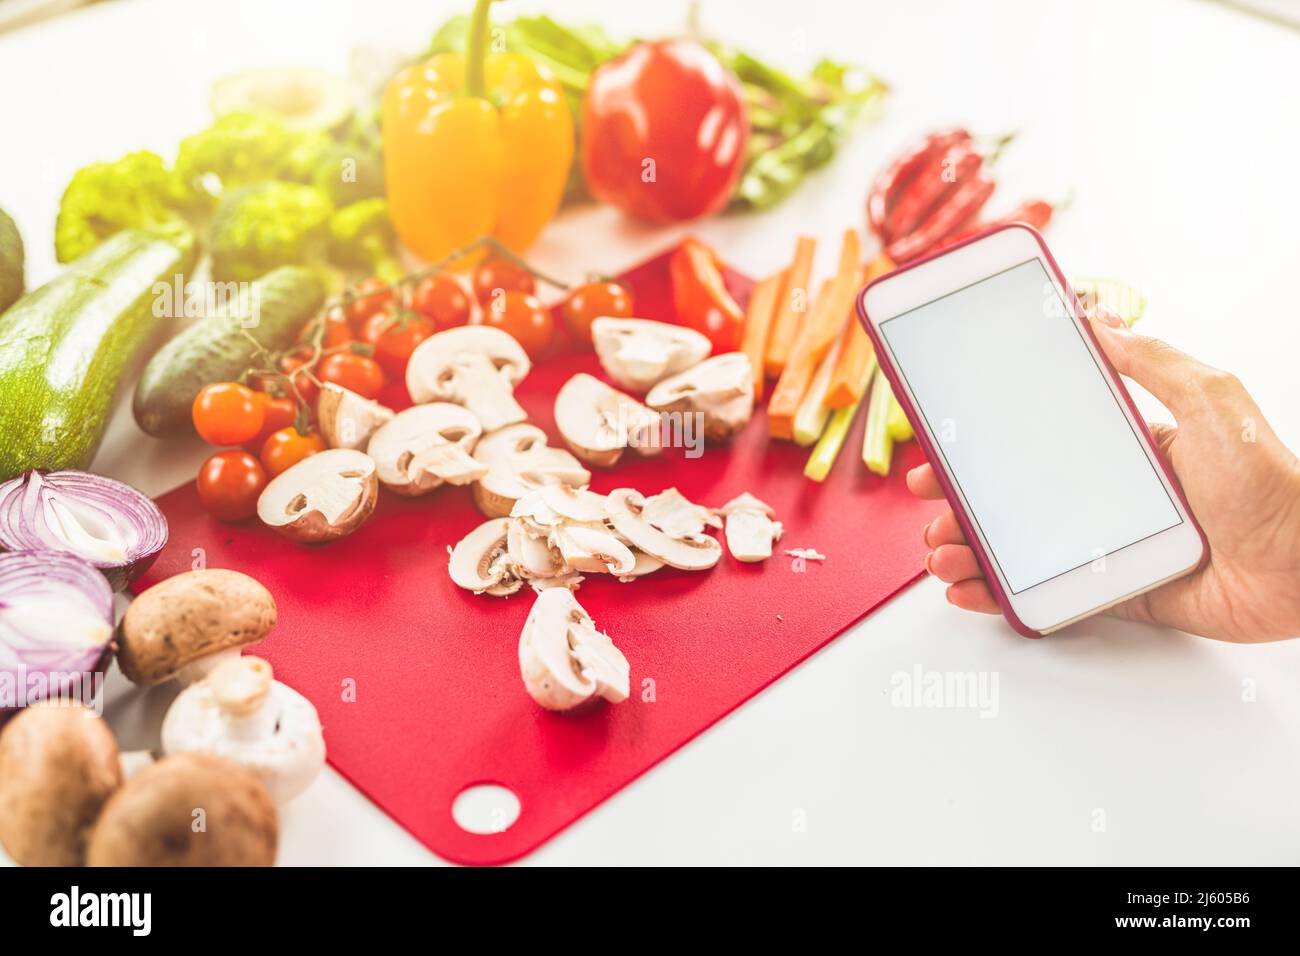 Cercate una ricetta su internet con il telefono cellulare a base di ingredienti vegetali Foto Stock